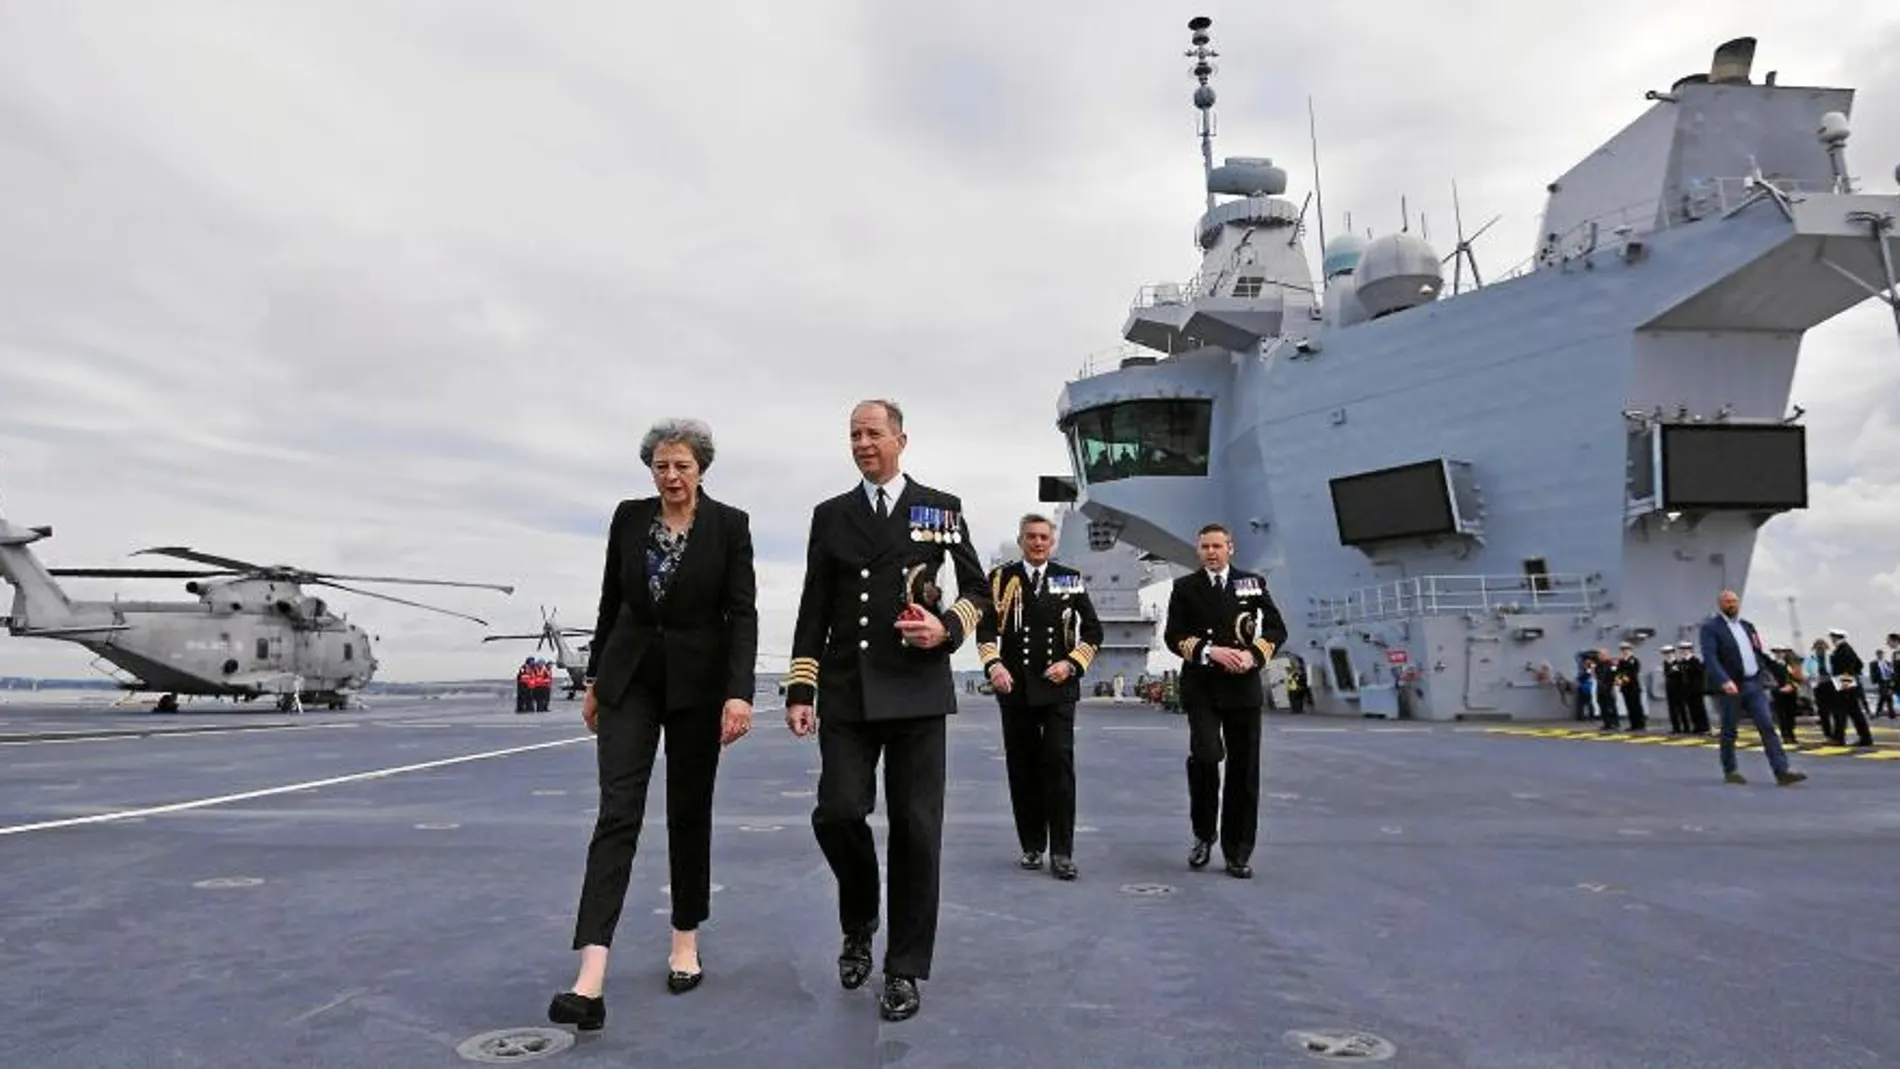 El portaaviones «HMS Queen Elizabeth» en la base naval de Portsmouth durante una visita de la ex Primer Ministro Theresa May